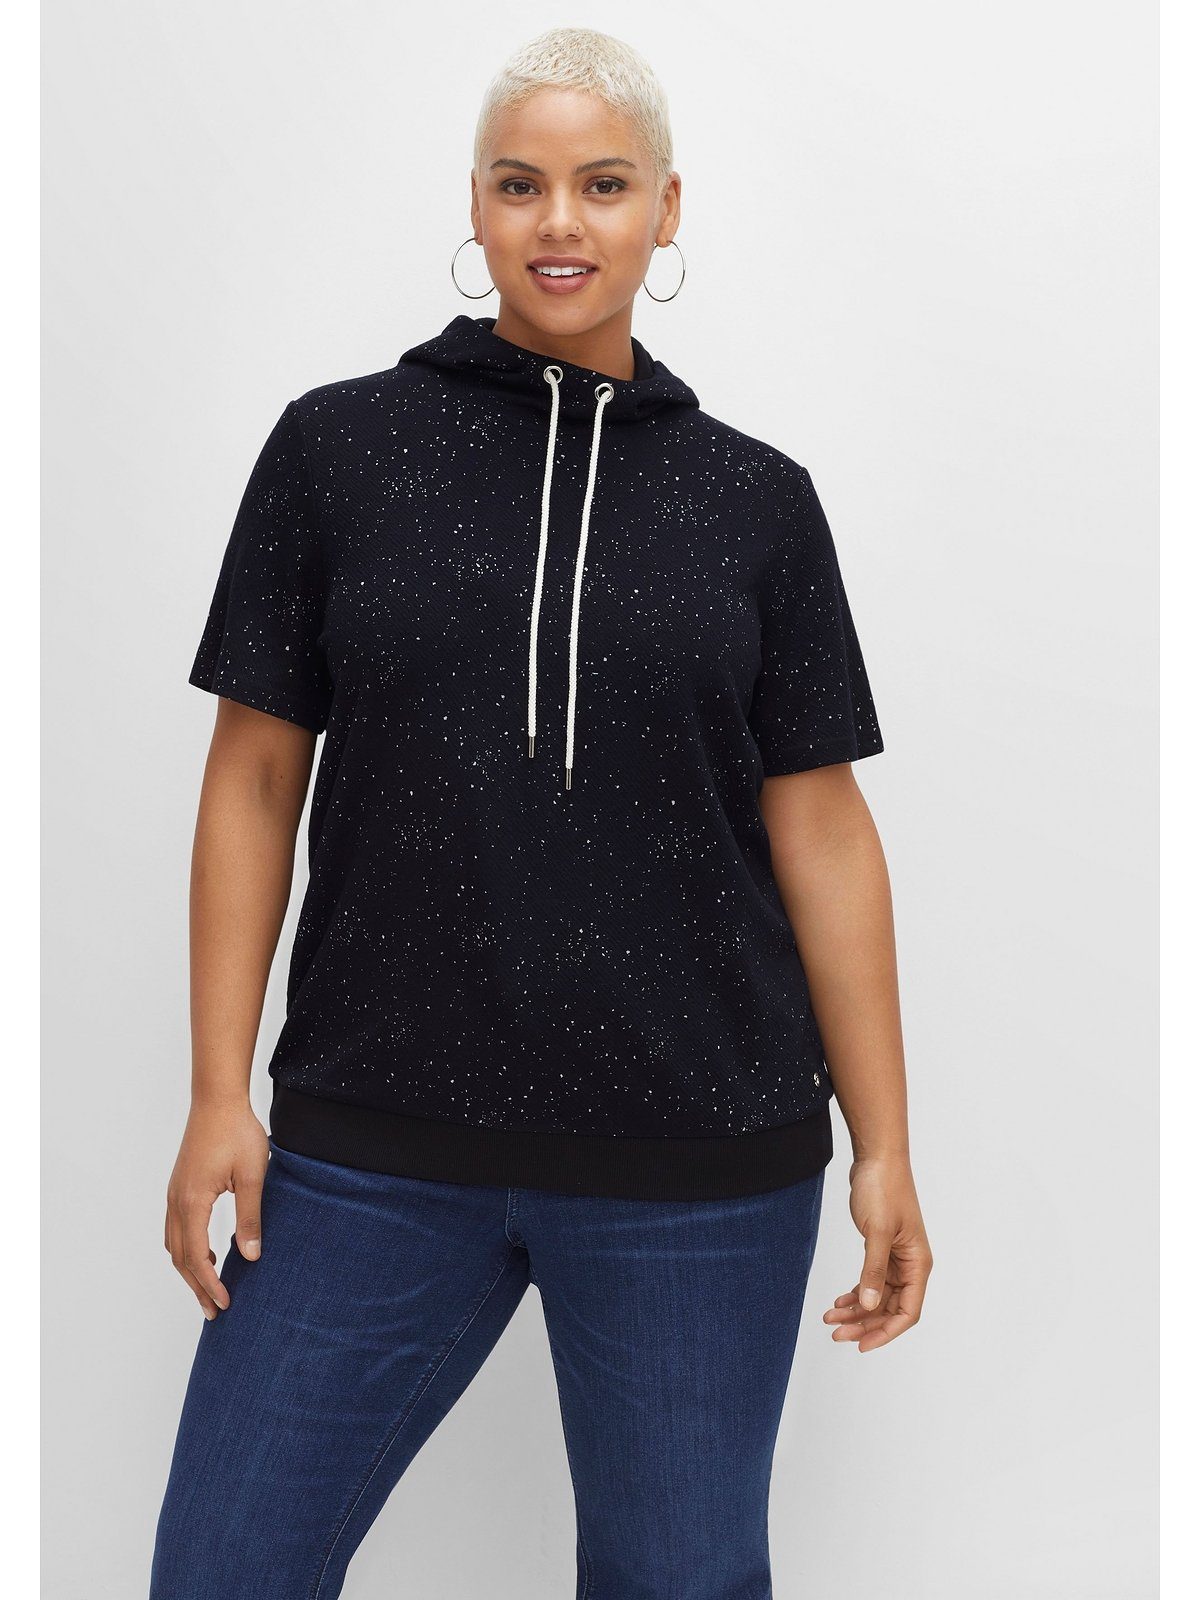 Sheego T-Shirt Große leichter Sweatware, aus Kapuze mit meliert Größen schwarz